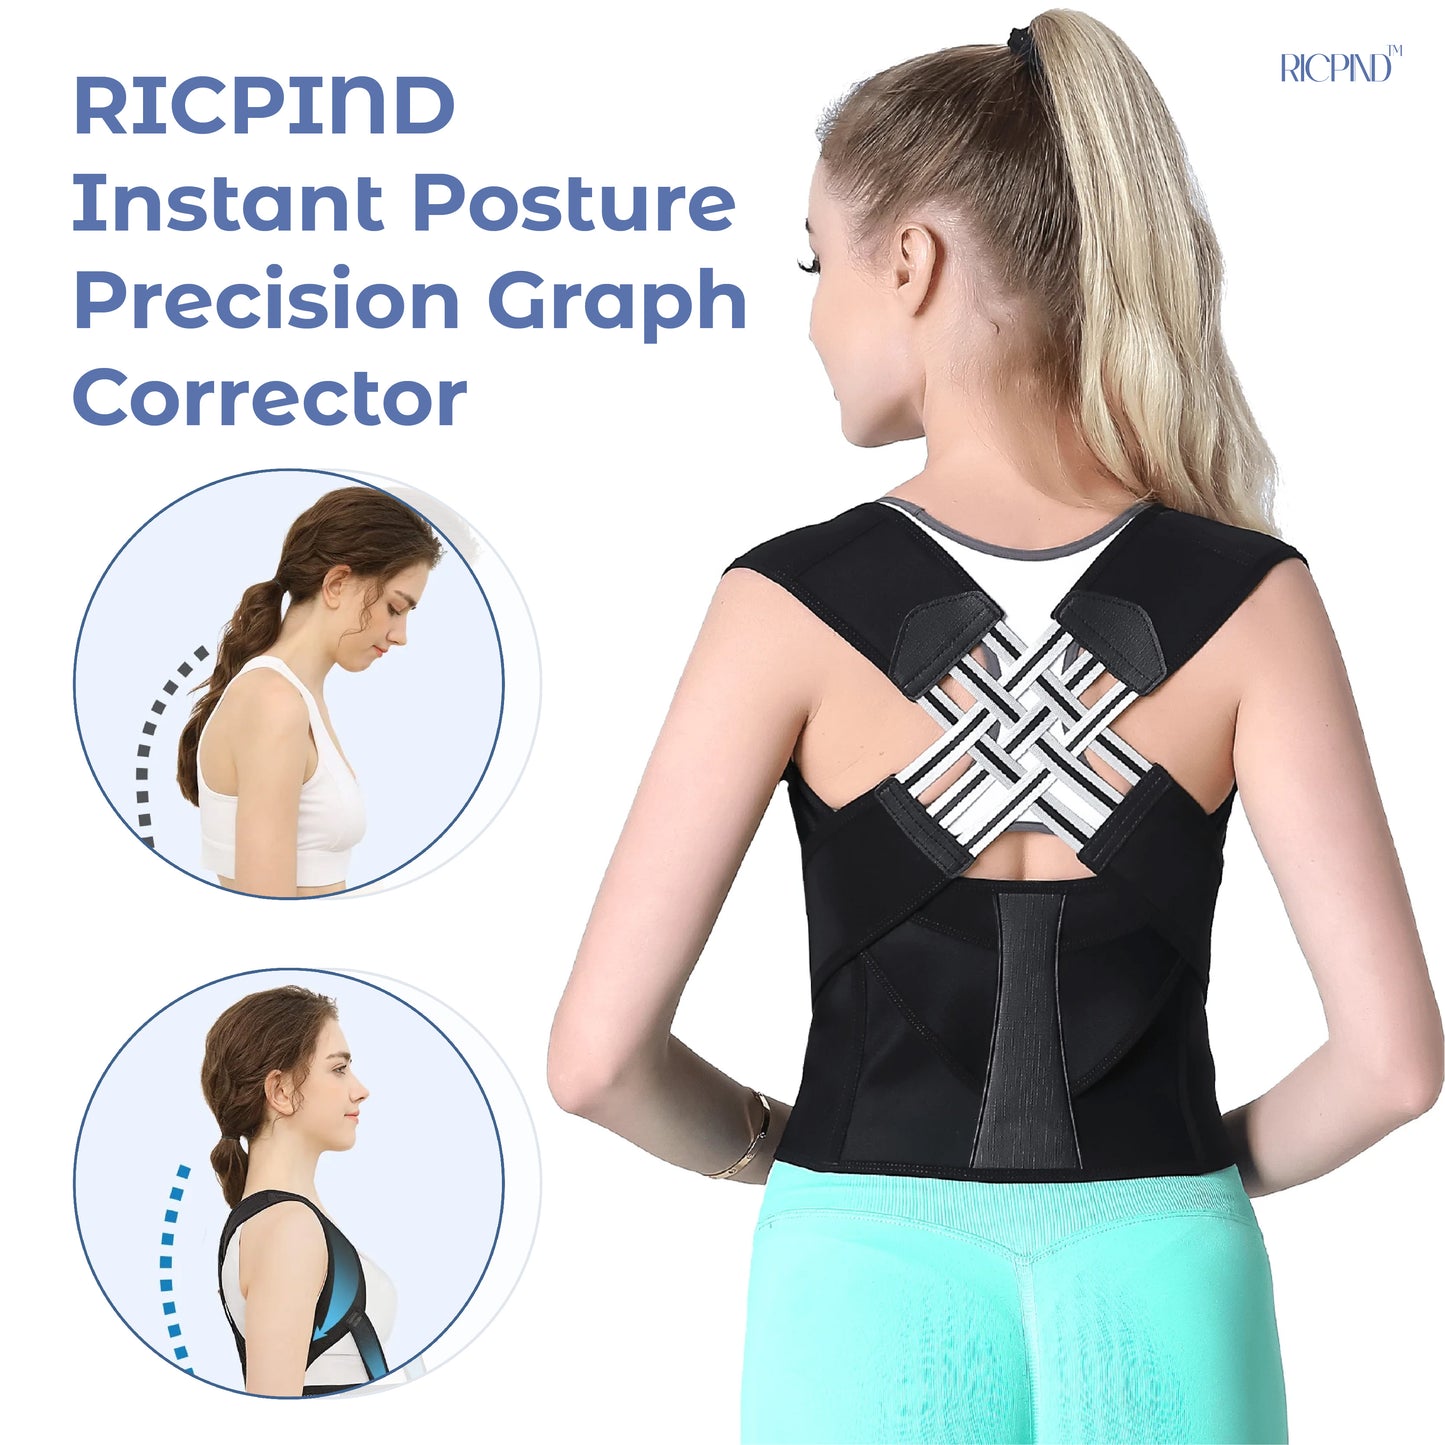 RICPIND Instant Posture Precision Graph Corrector